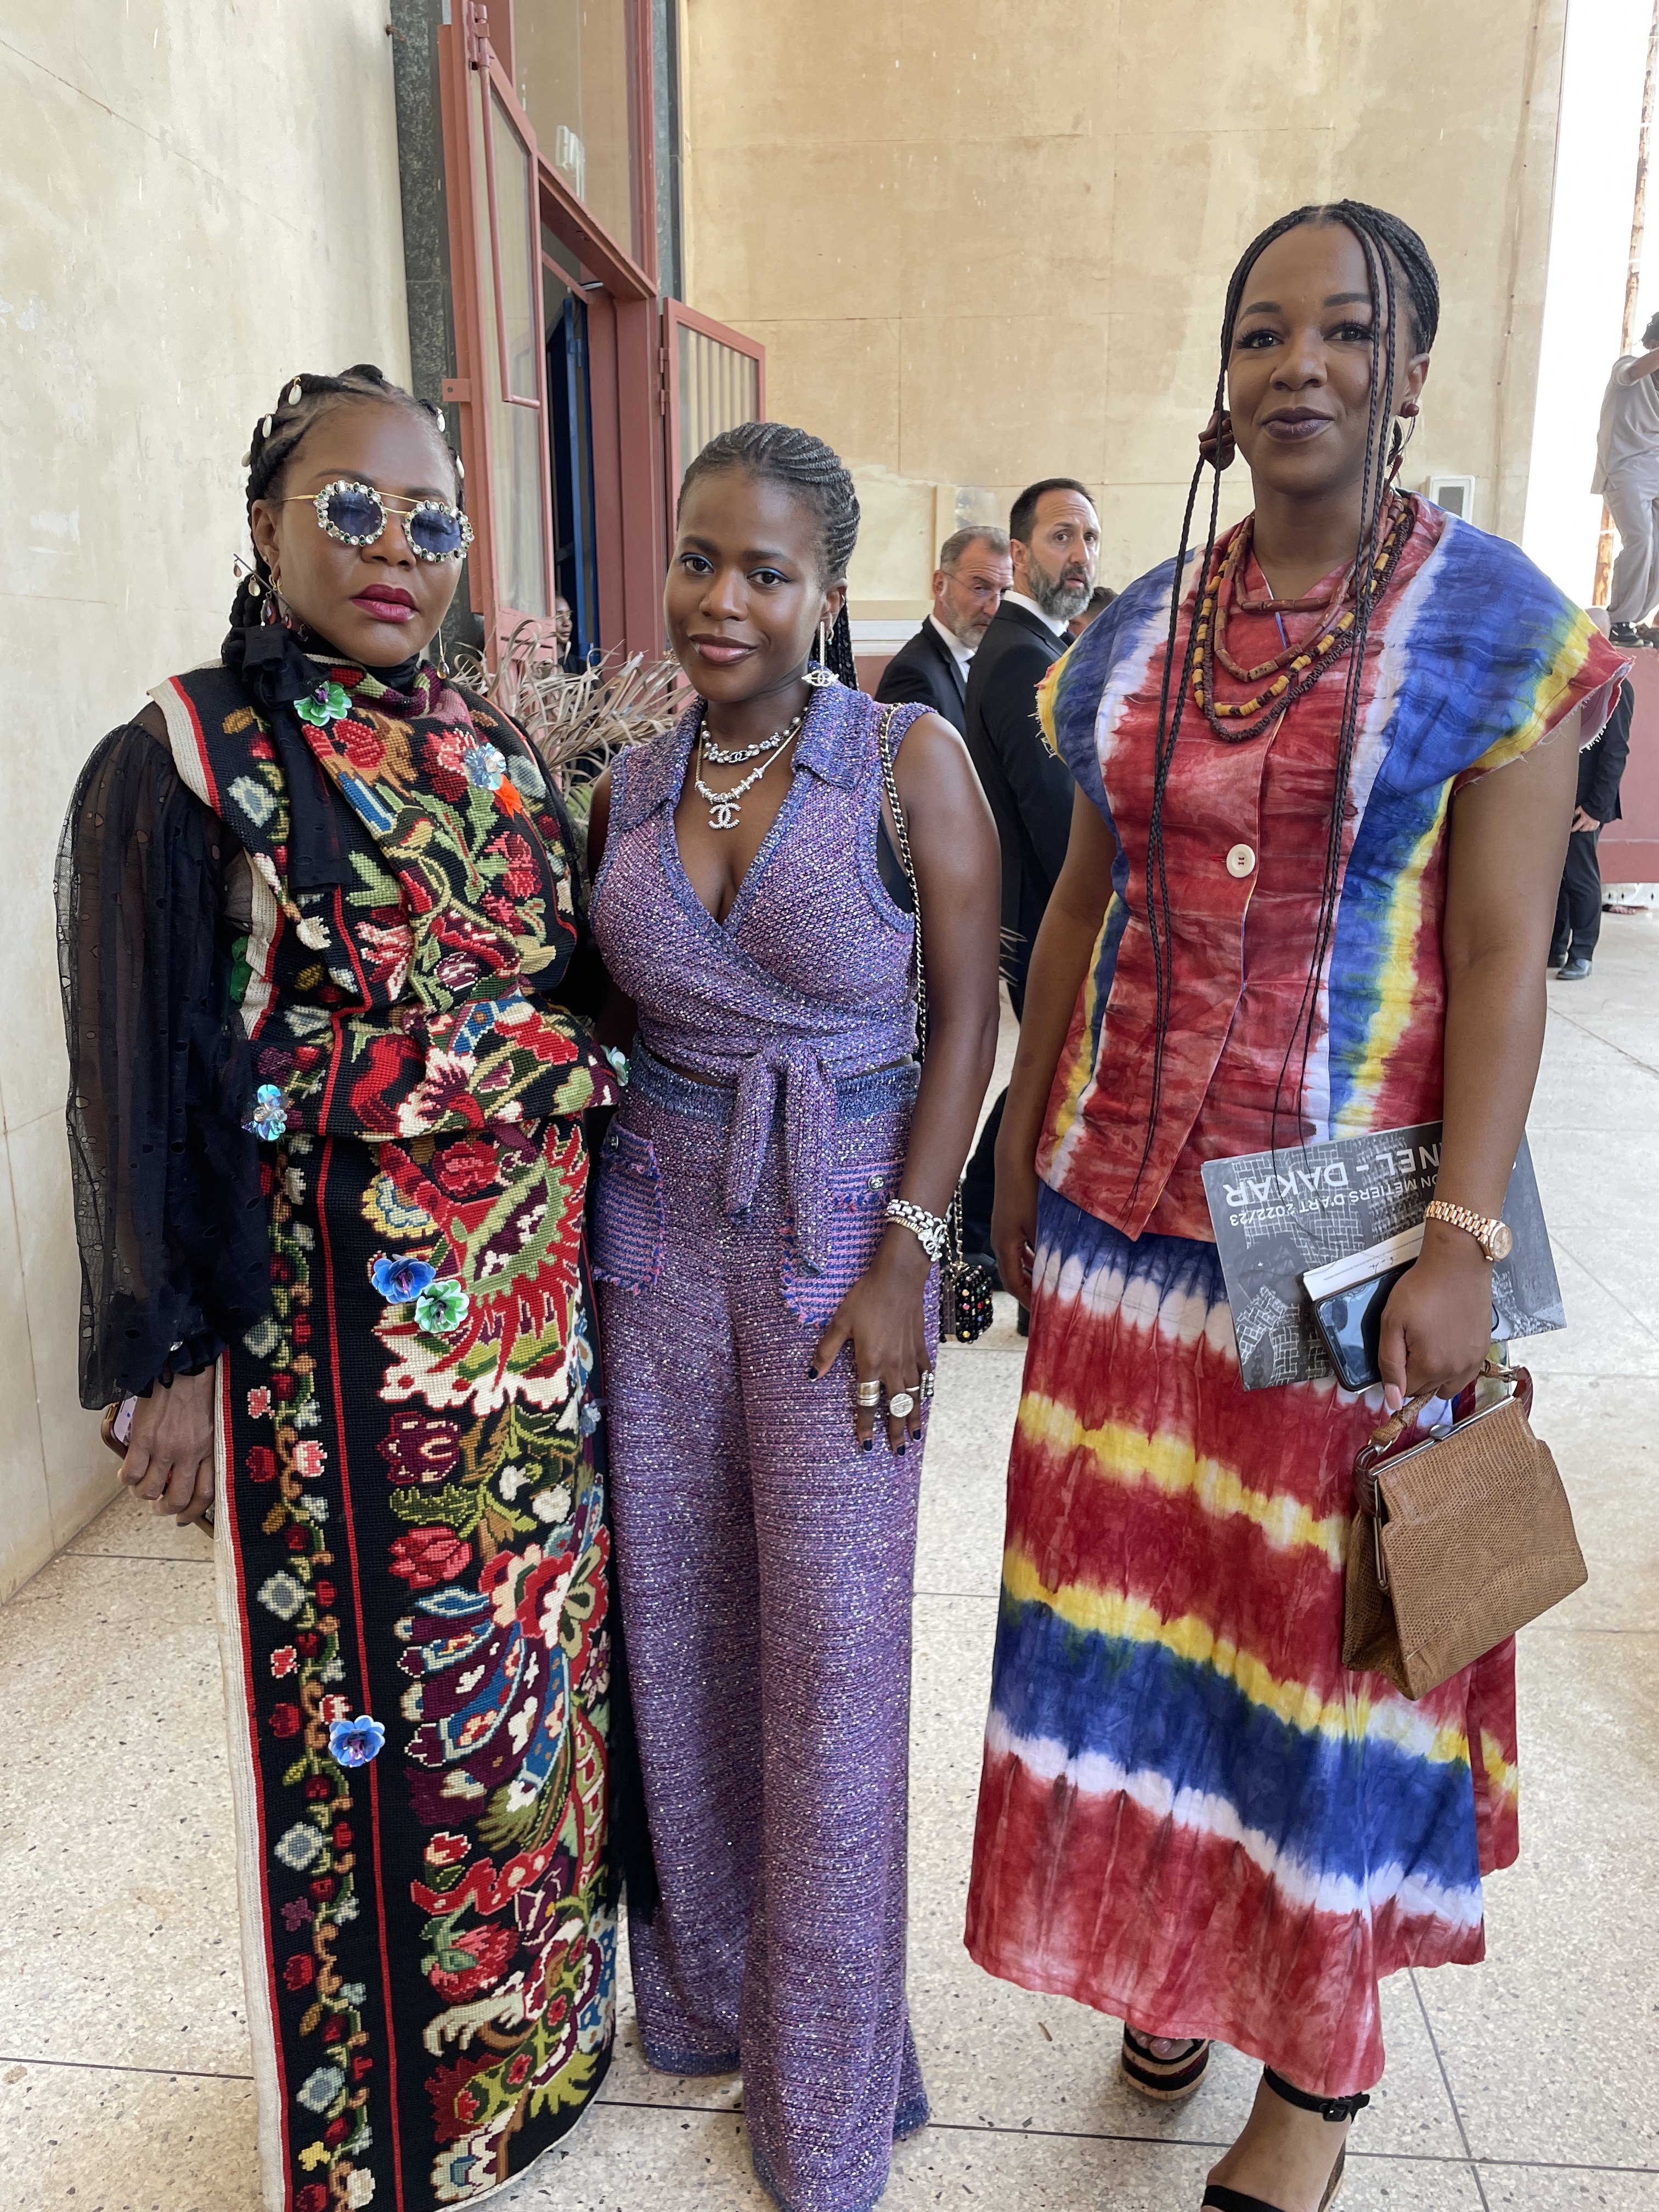 Guests attending the Chanel Métiers d’Art fashion show in Dakar, Senegal. Photo: Vincenzo La Torre